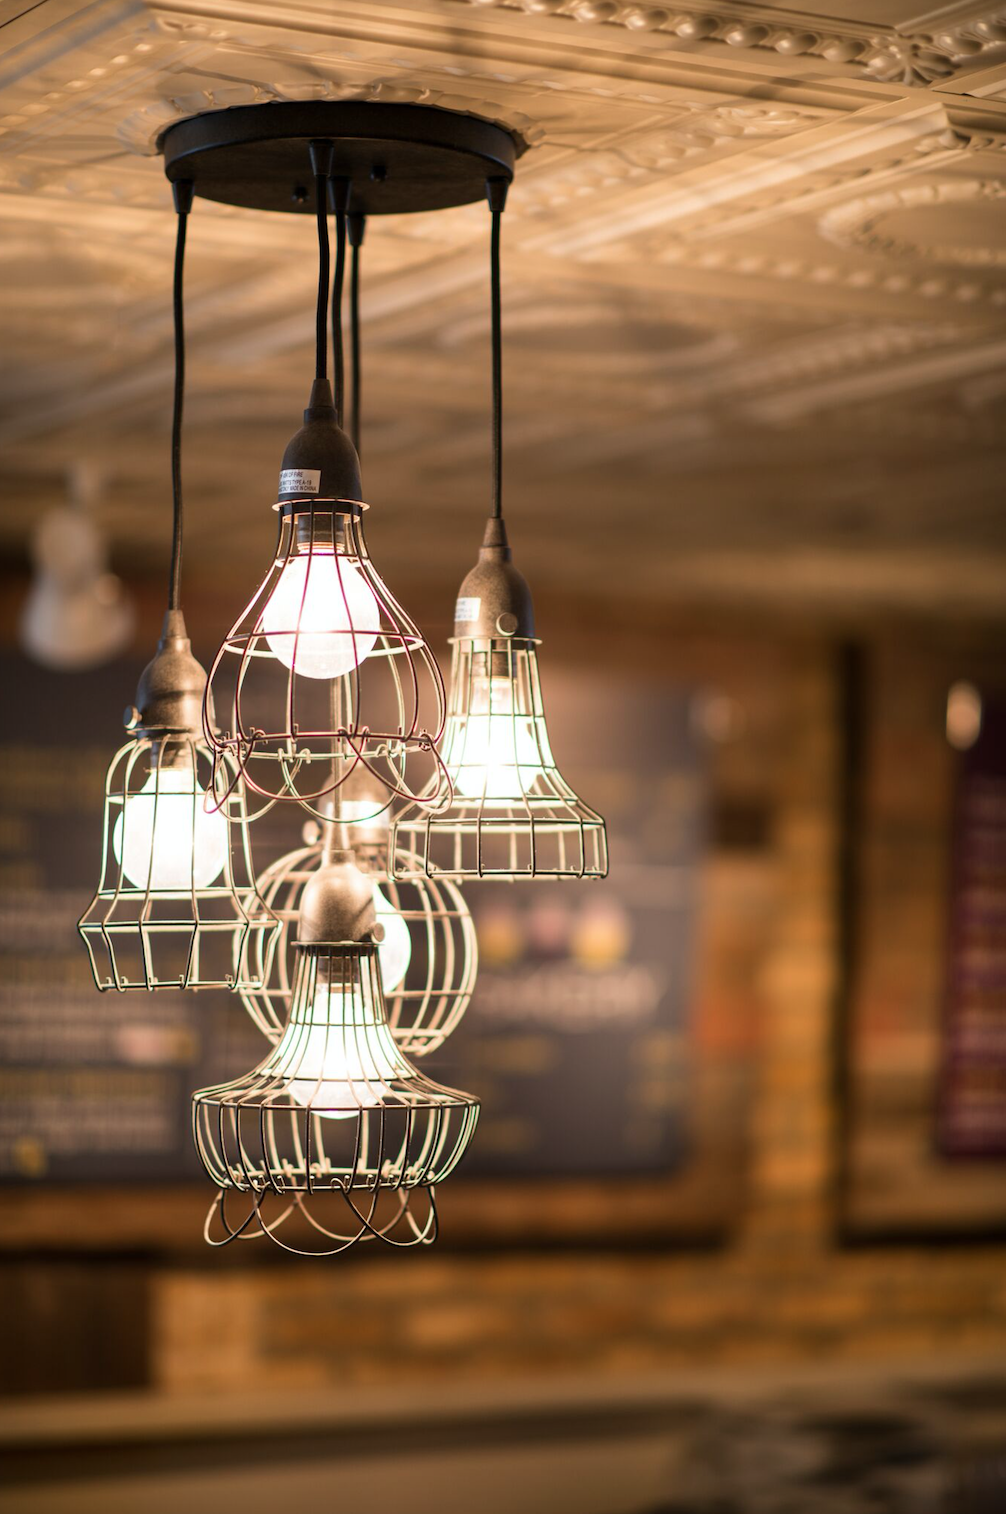 Lighting design by Two Hands Interiors for Glen Ellyn restaurant